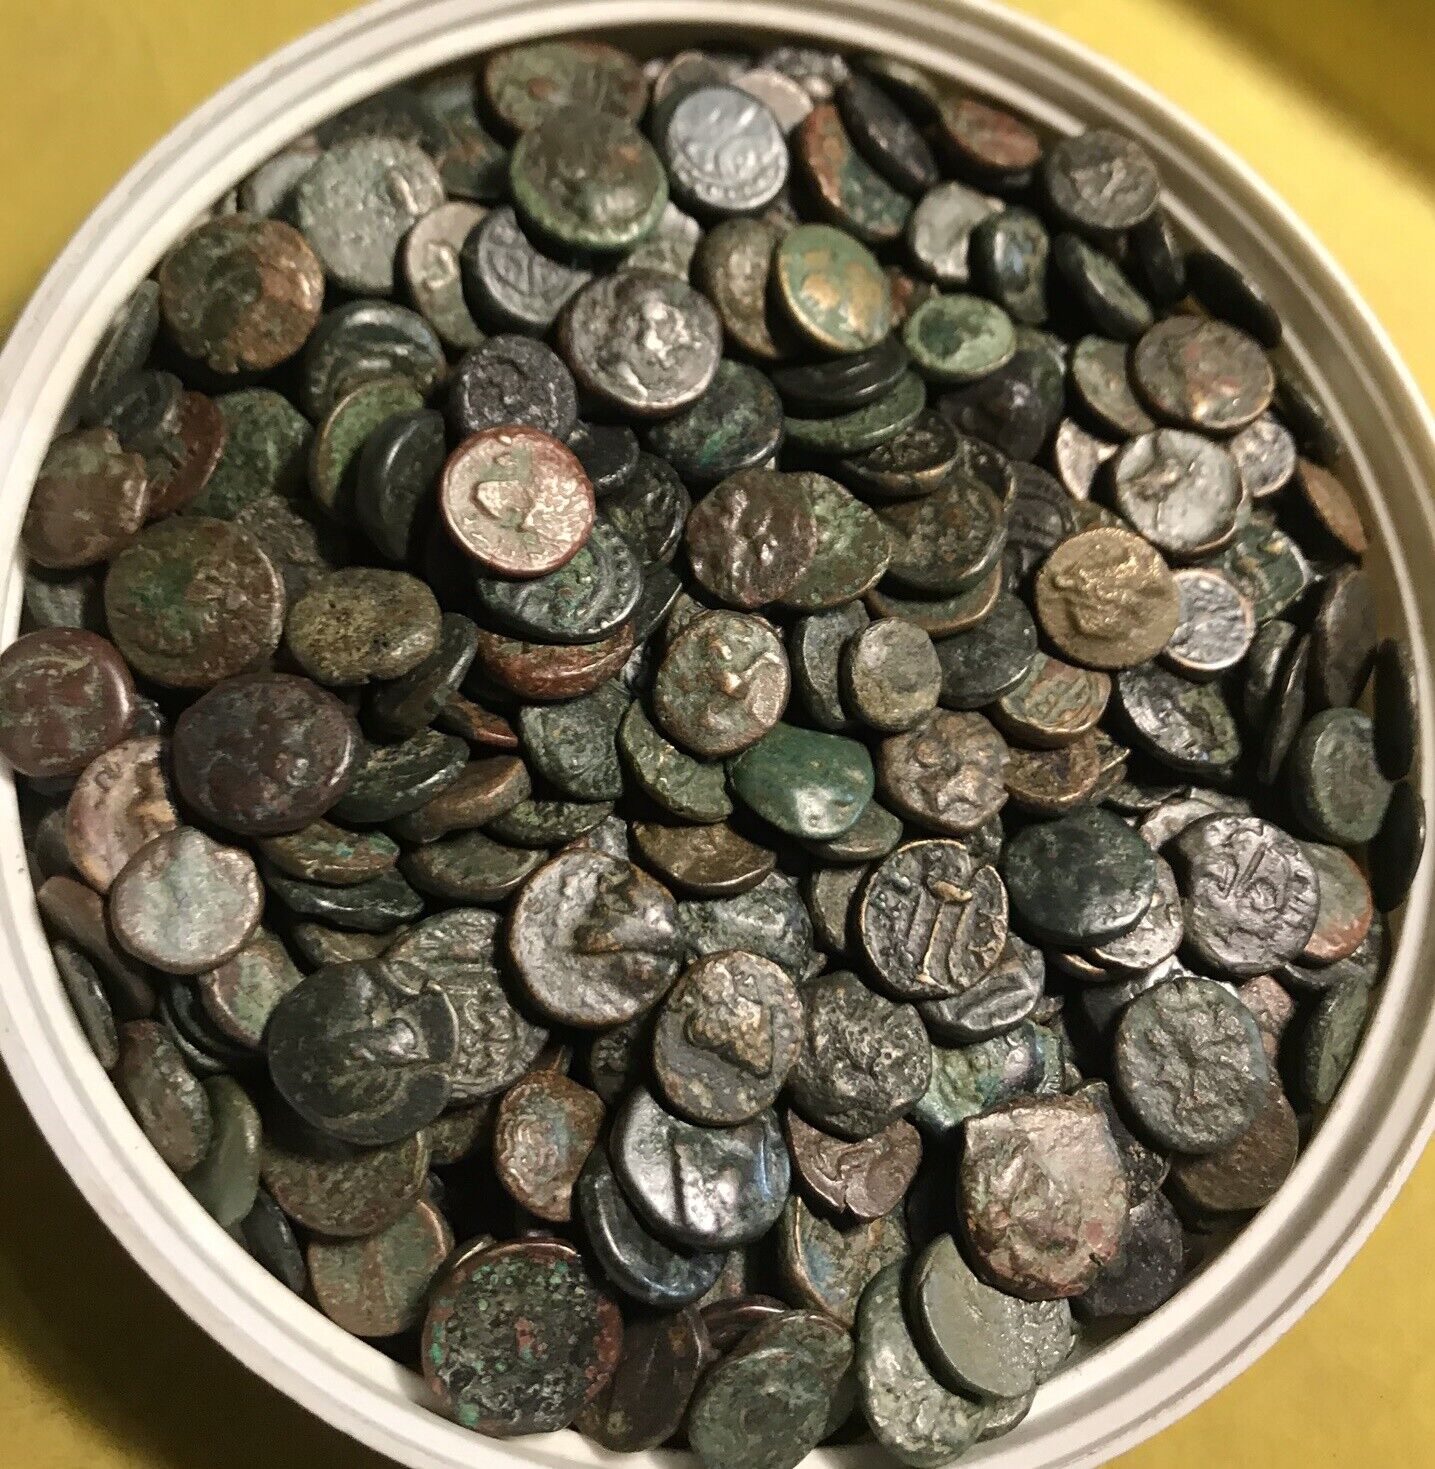 Lot of 3 Rare Genuine Ancient Greek bronze coins Mesembria Apollonia Maroneia  Без бренда - фотография #3